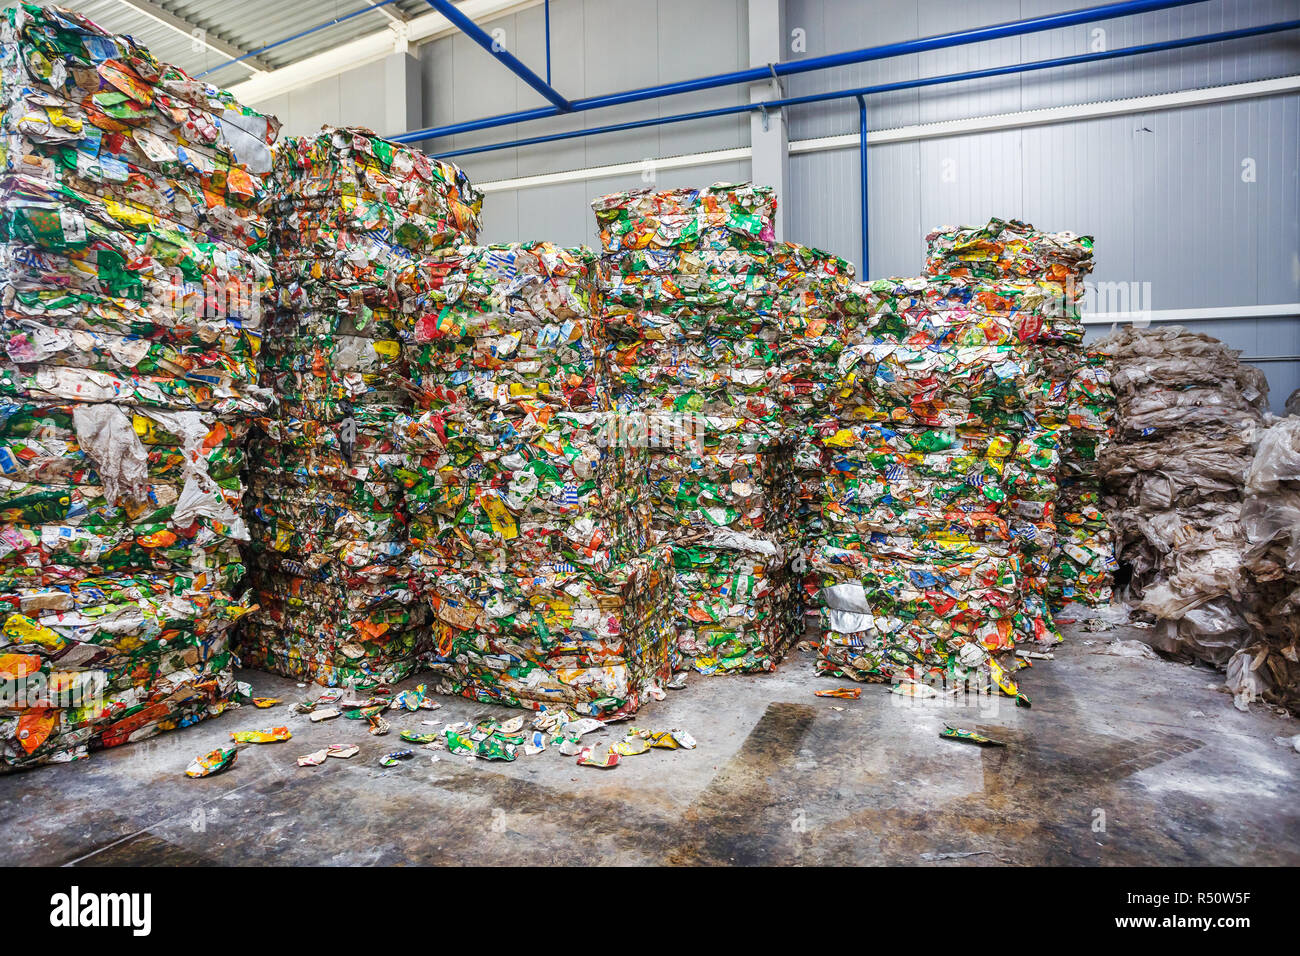 Kunststoff Ballen von Müll an der Abfallbehandlung Verarbeitungsbetrieb. Recycling separatee und Lagerung von Müll für die weitere Entsorgung, Müll zu sortieren. Busi Stockfoto